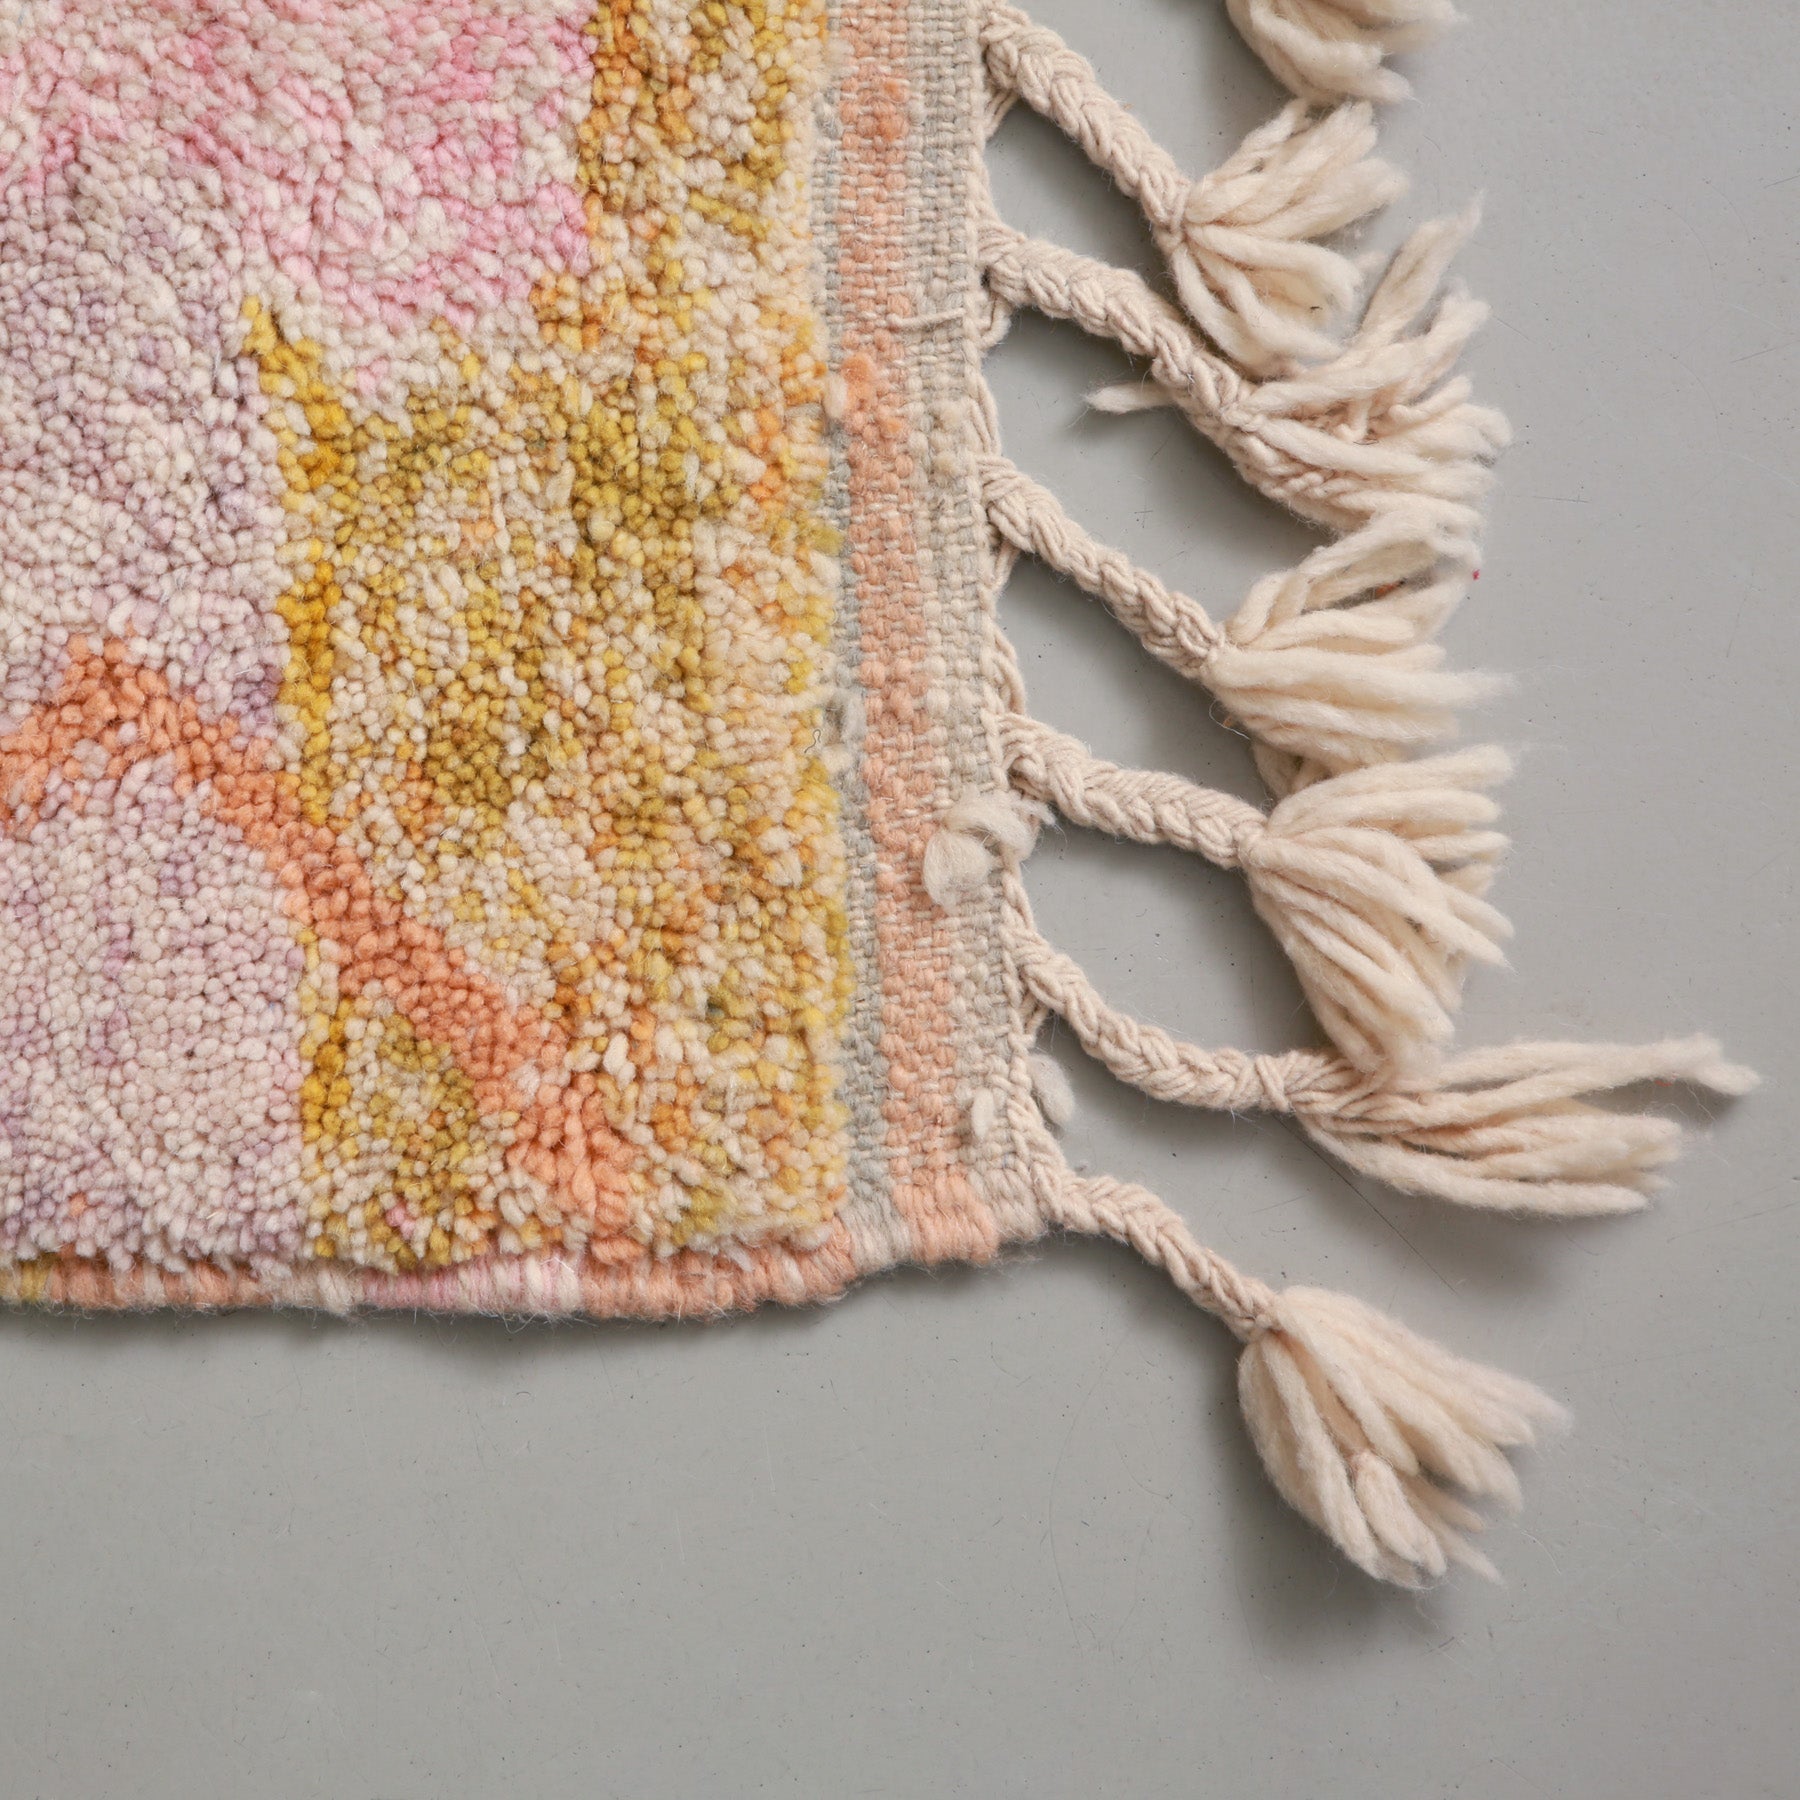 angolo di un tappeto marocchino Beni Ourain con sfumature gi giallo arancione rosa e lilla